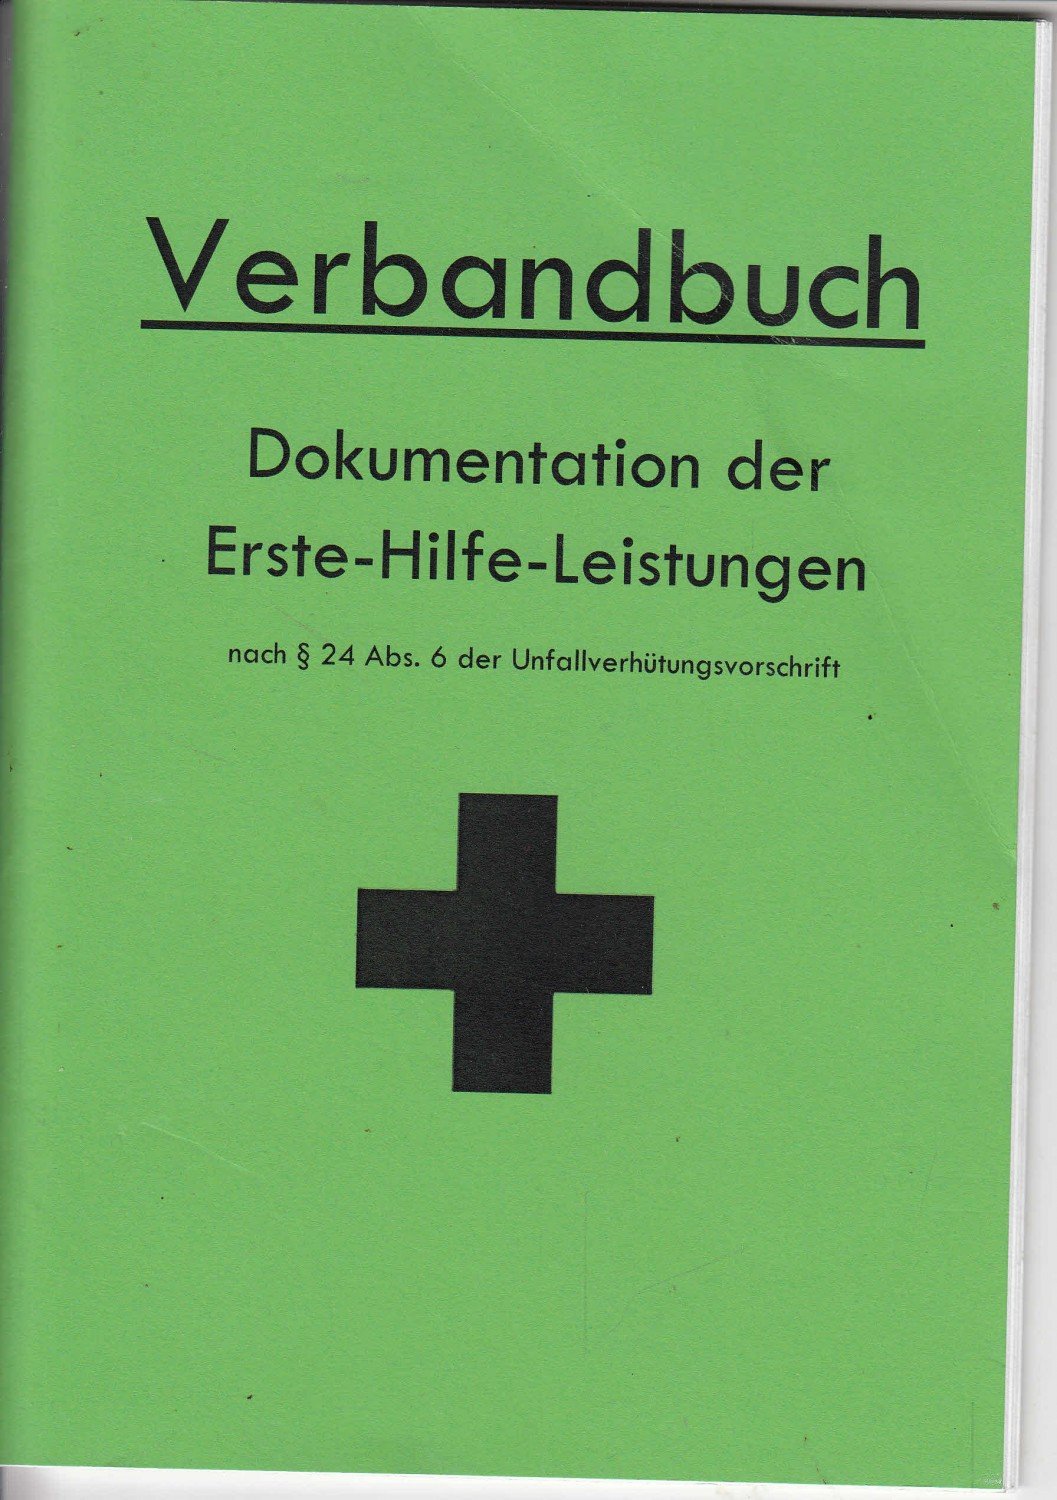 https://images.booklooker.de/x/00vv8j/Verbandbuch-Dokumentation-der-Erste-Hilfe-Leistungen-nach-24-Abs-6-der-Unfallverh%C3%BCtungsvorschrift-ab.jpg